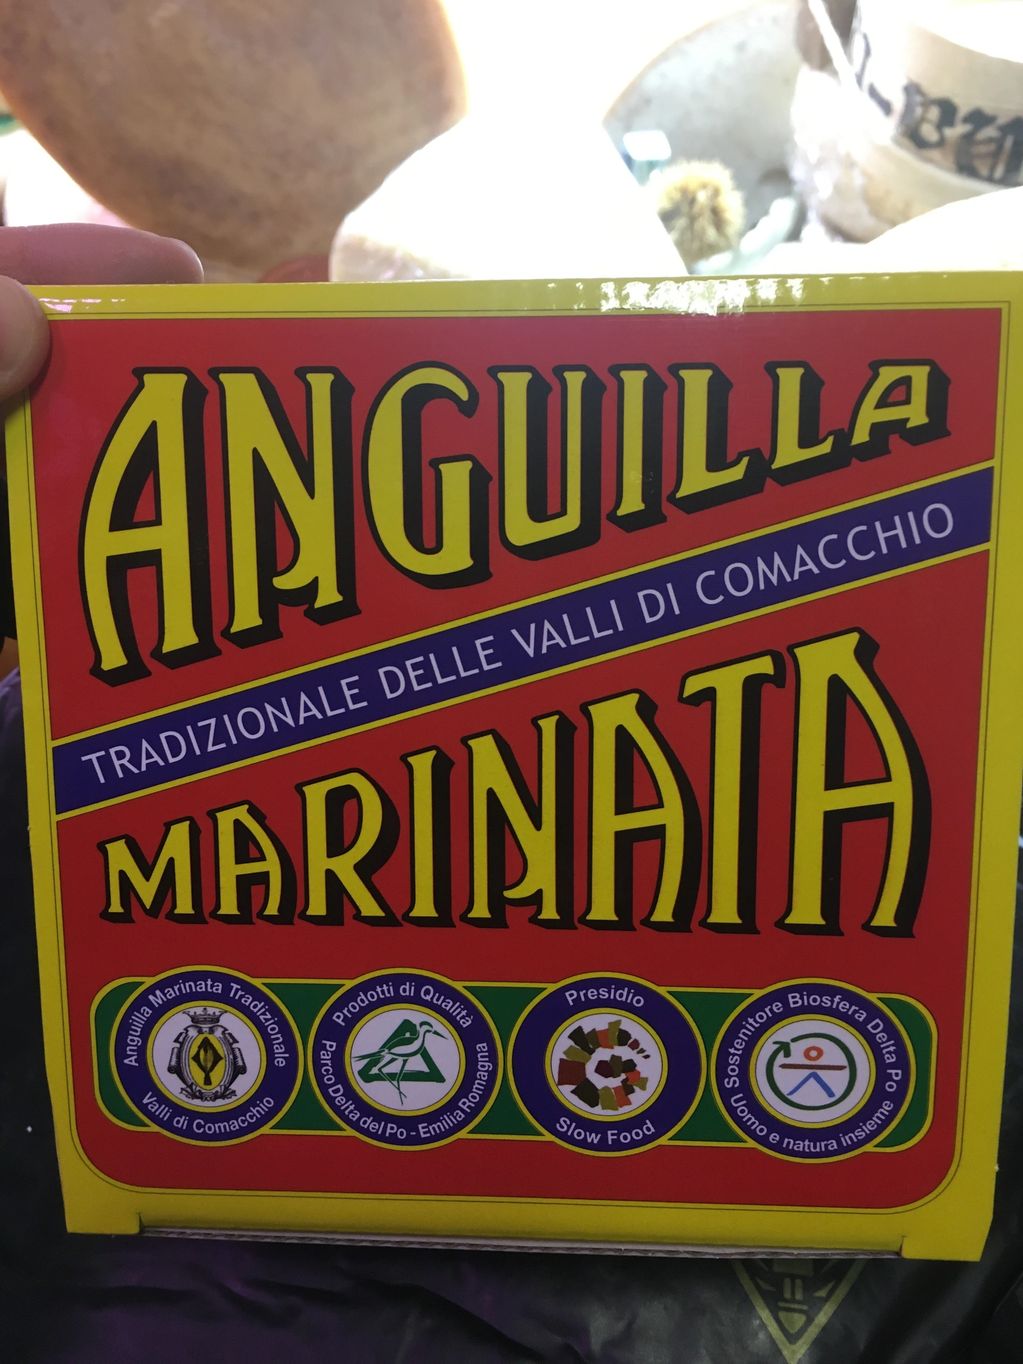 scatola contenente anguilla marinata tradizionale delle valli di comacchio presidio slow food